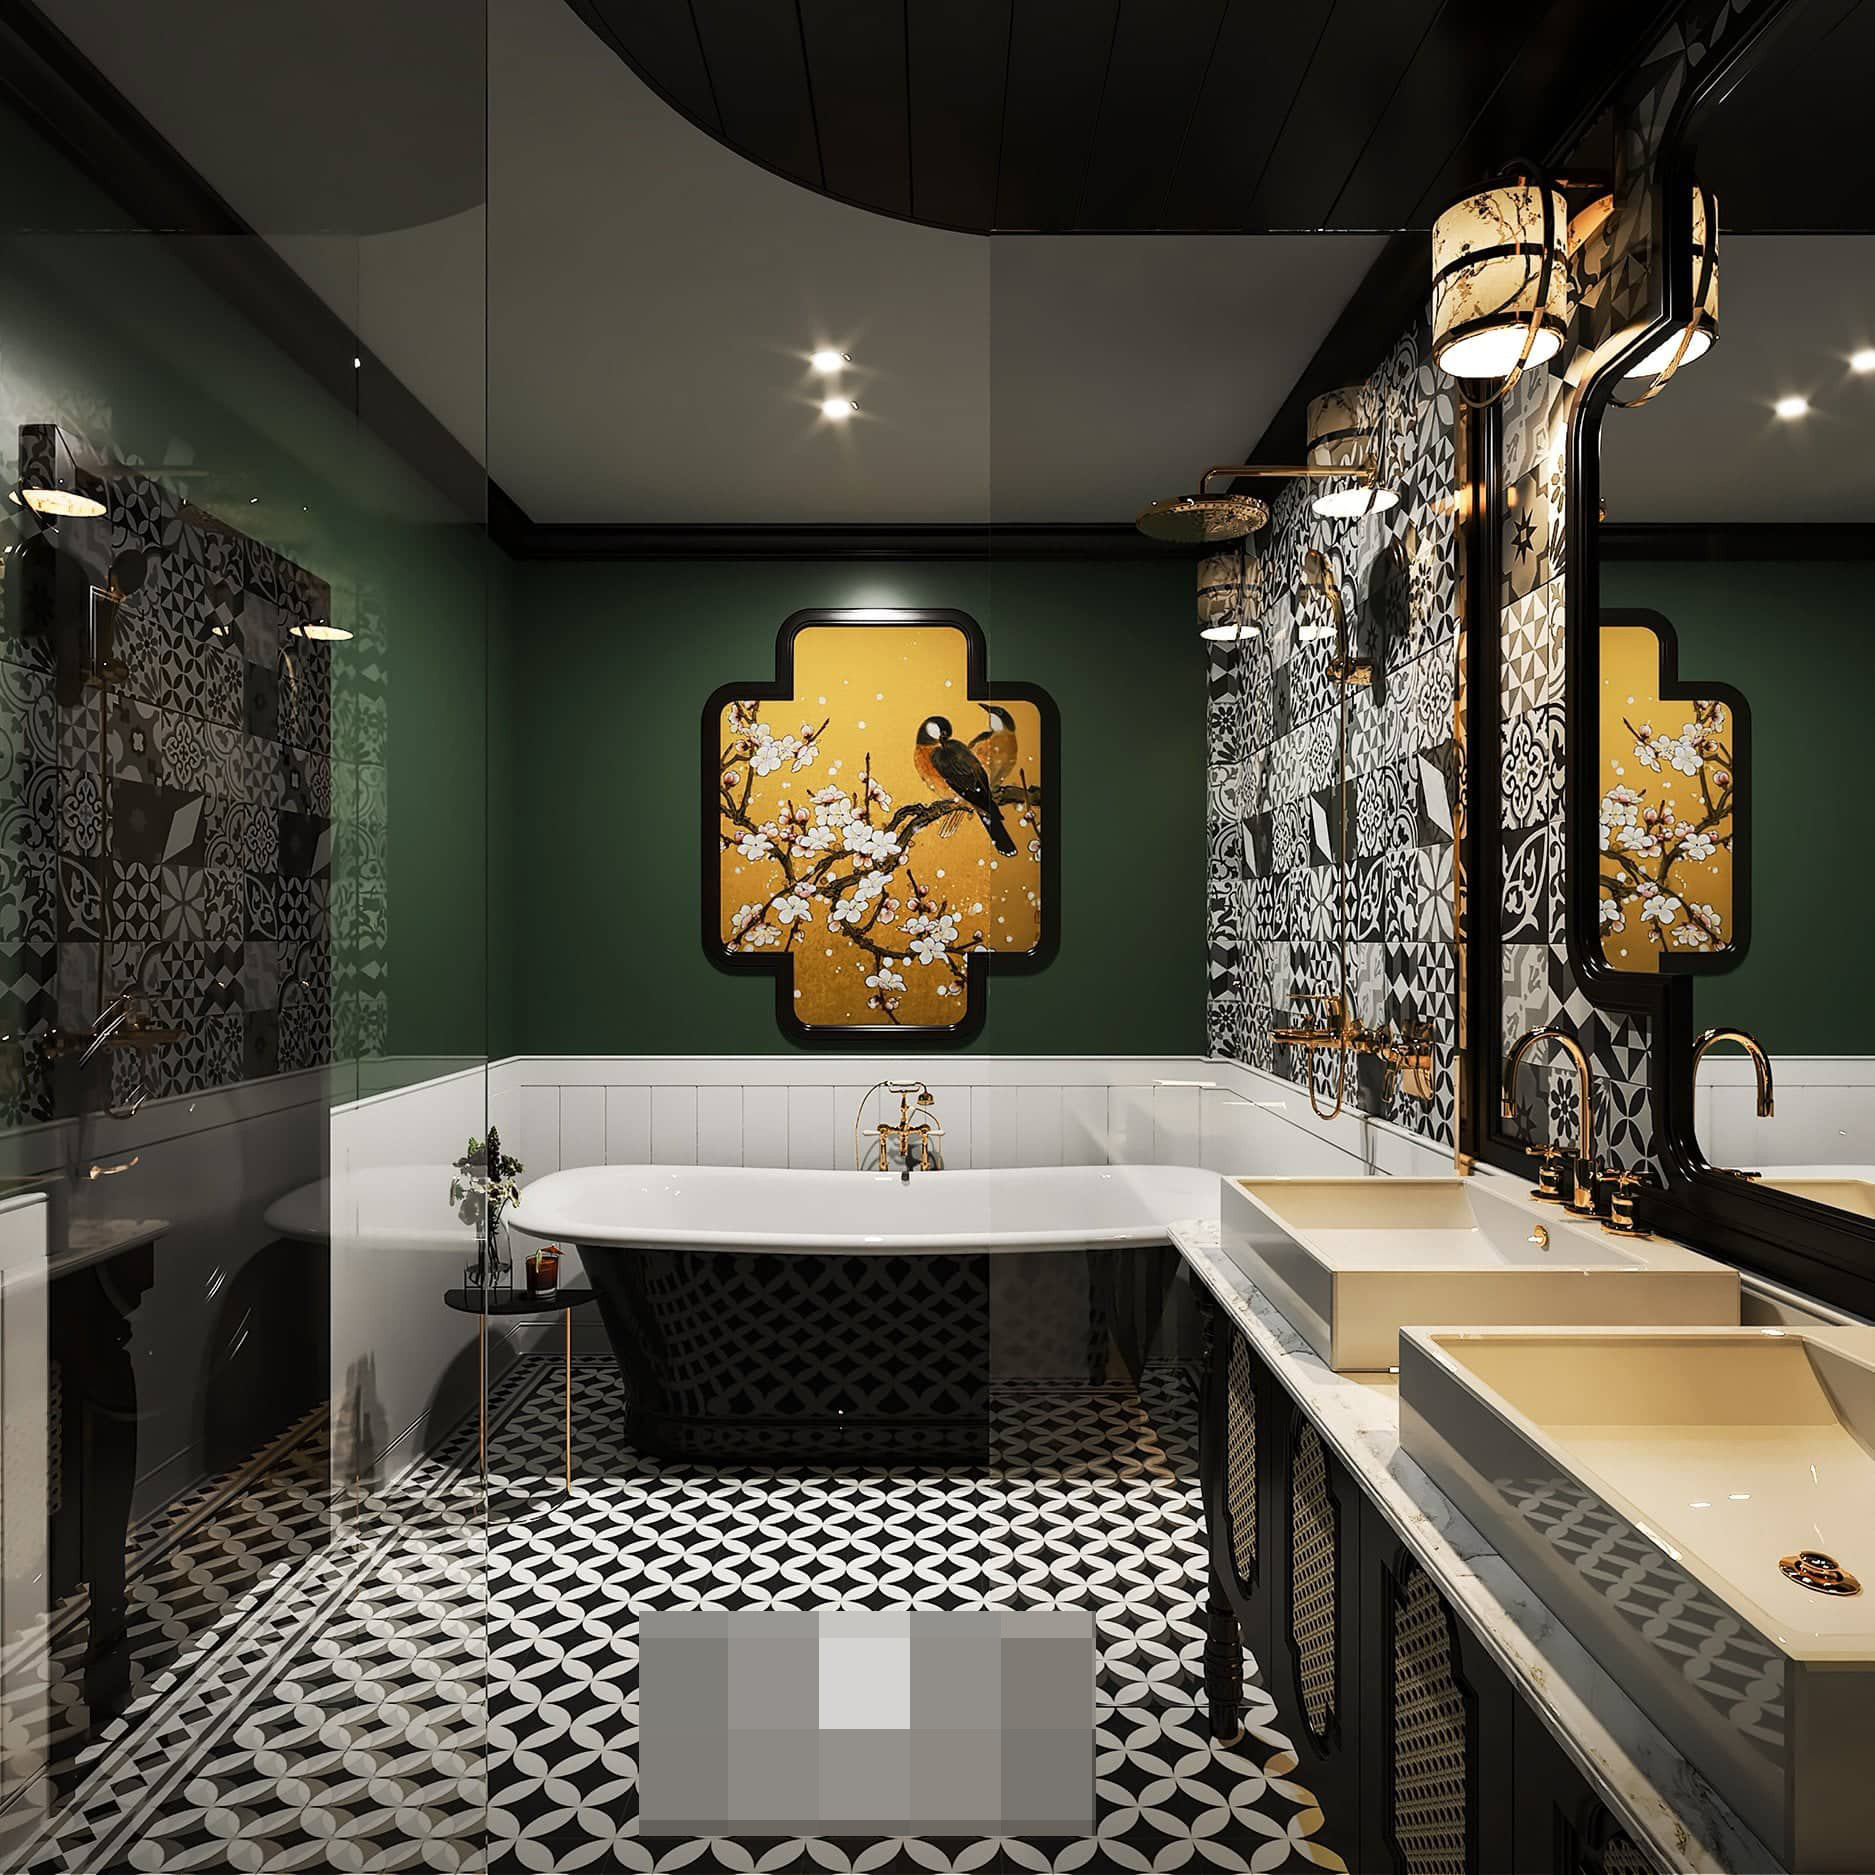 Phòng tắm sang trọng, tỉ mỉ đến từng chi tiết nhỏ như: Bức tranh kỷ hà, bồn tắm nằm, cây sen đồng, gạch ốp tường...